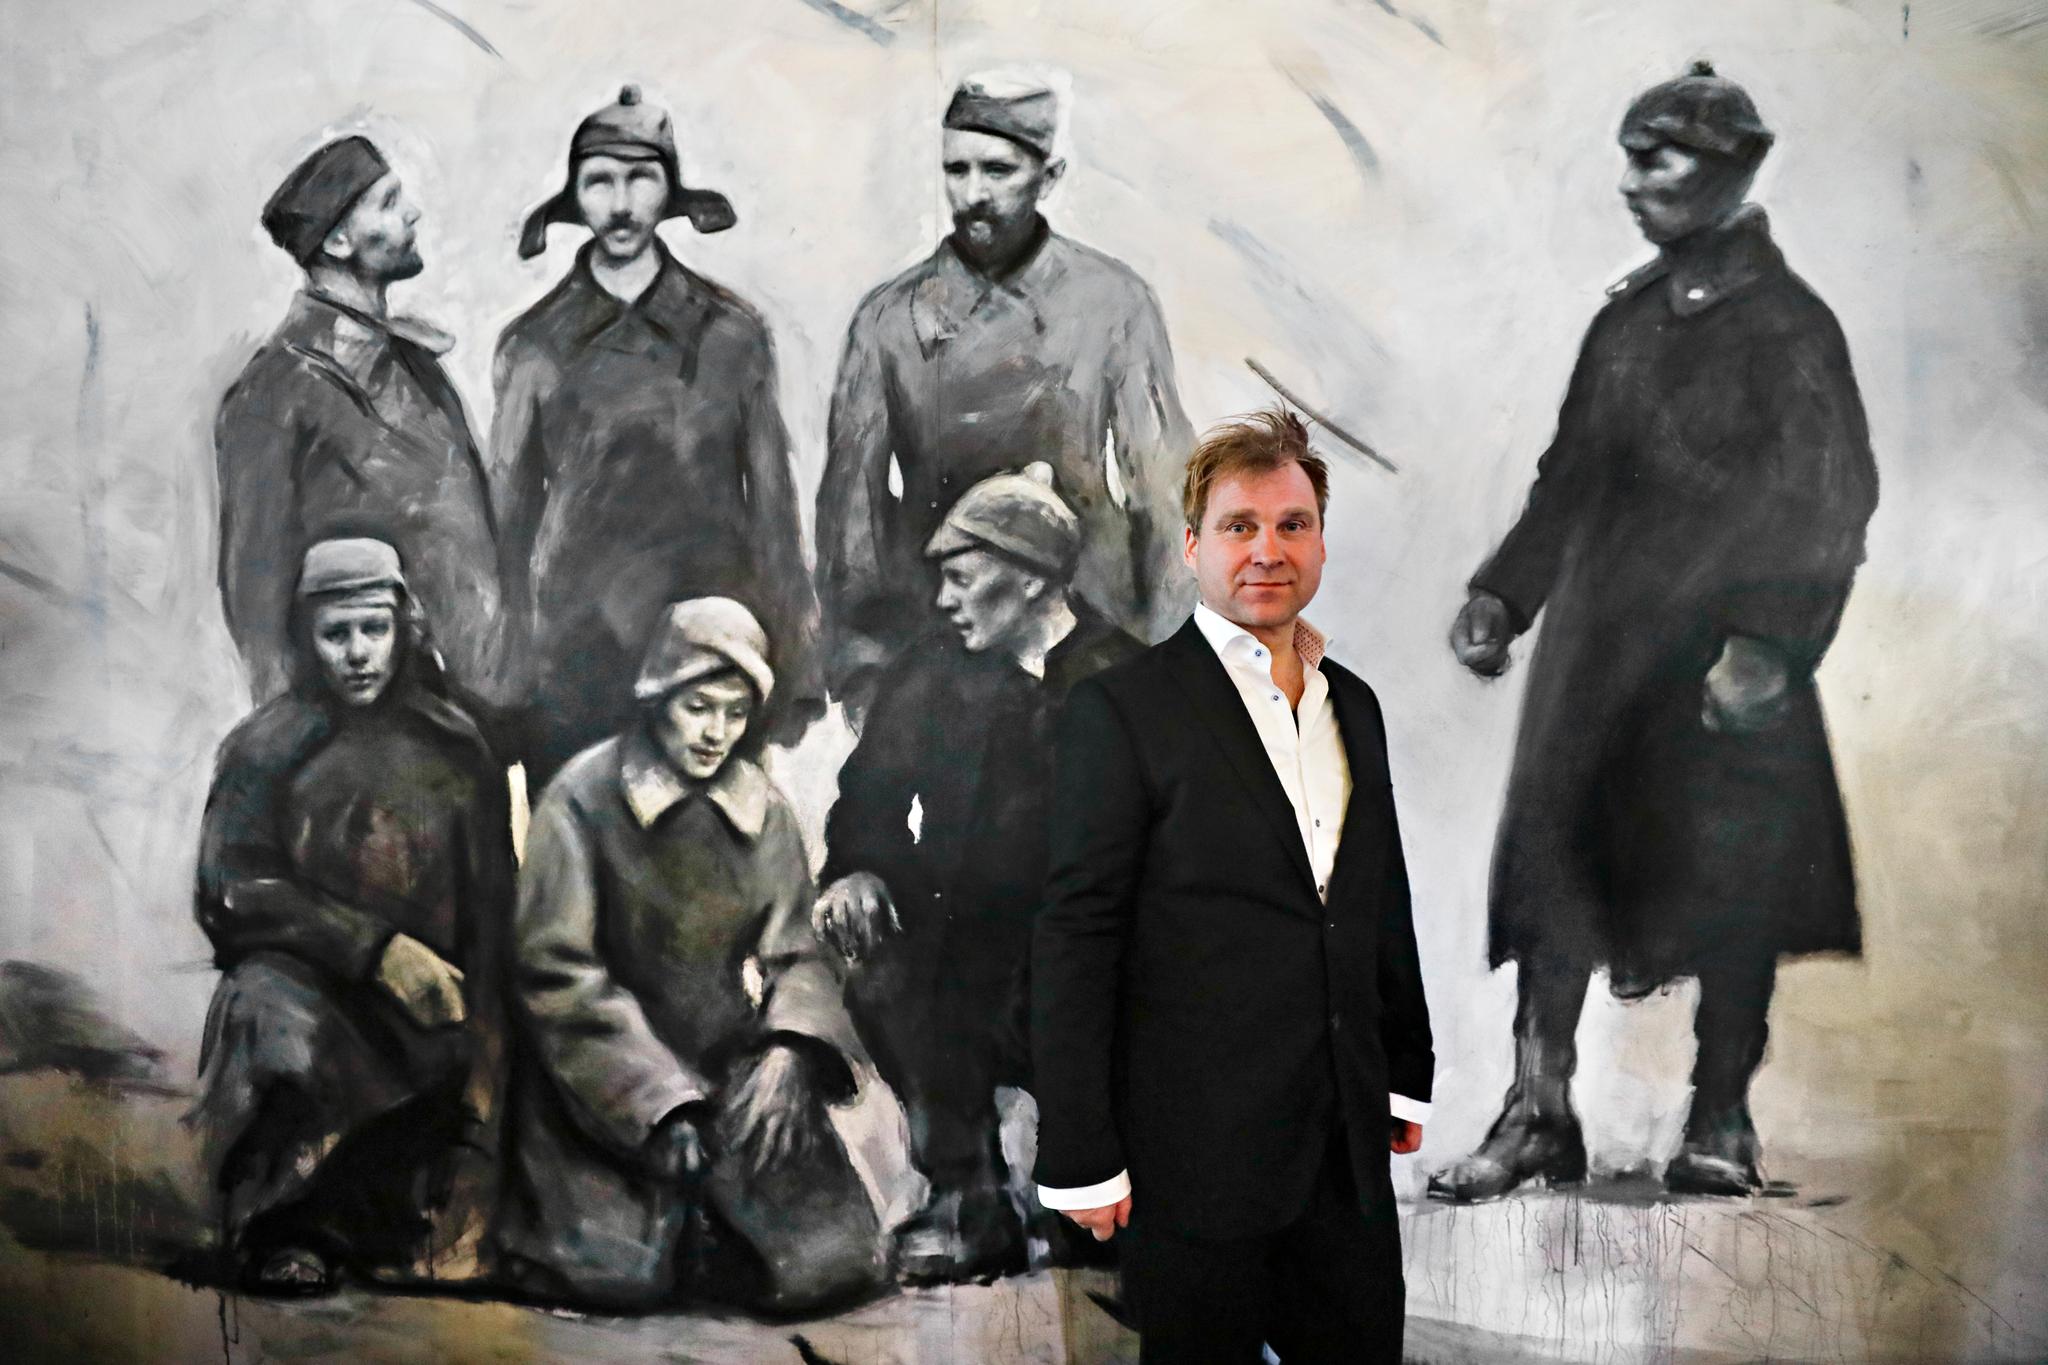 Kunstner Vebjørn Sand foran et av verkene som inngår i kunstinstallasjonen Roseslottet 2020.